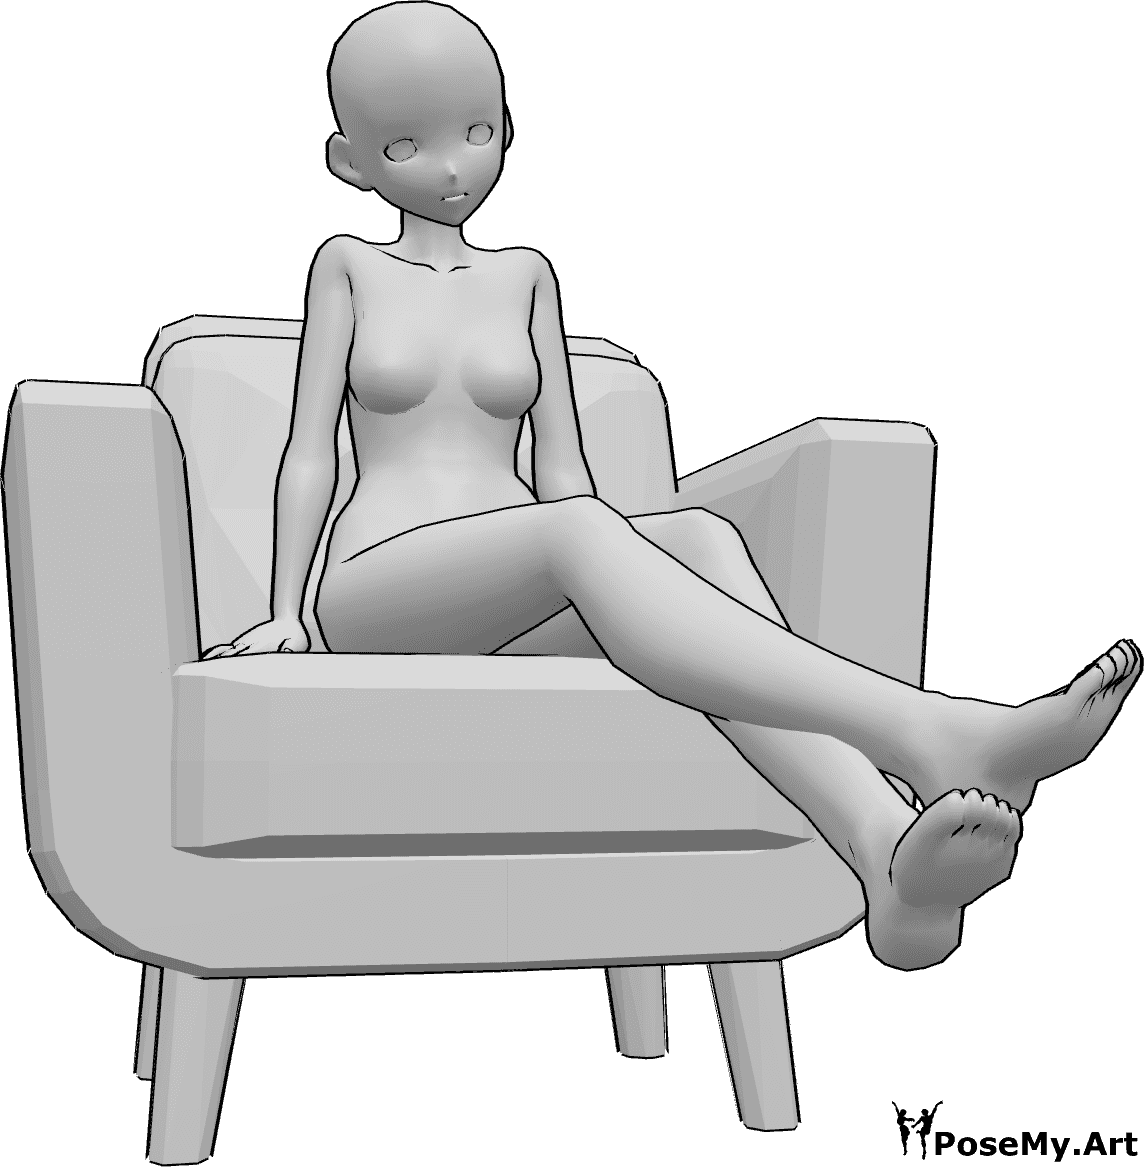 Referência de poses- Pose de anime com as pernas levantadas - A mulher anime está sentada no cadeirão e levanta as pernas